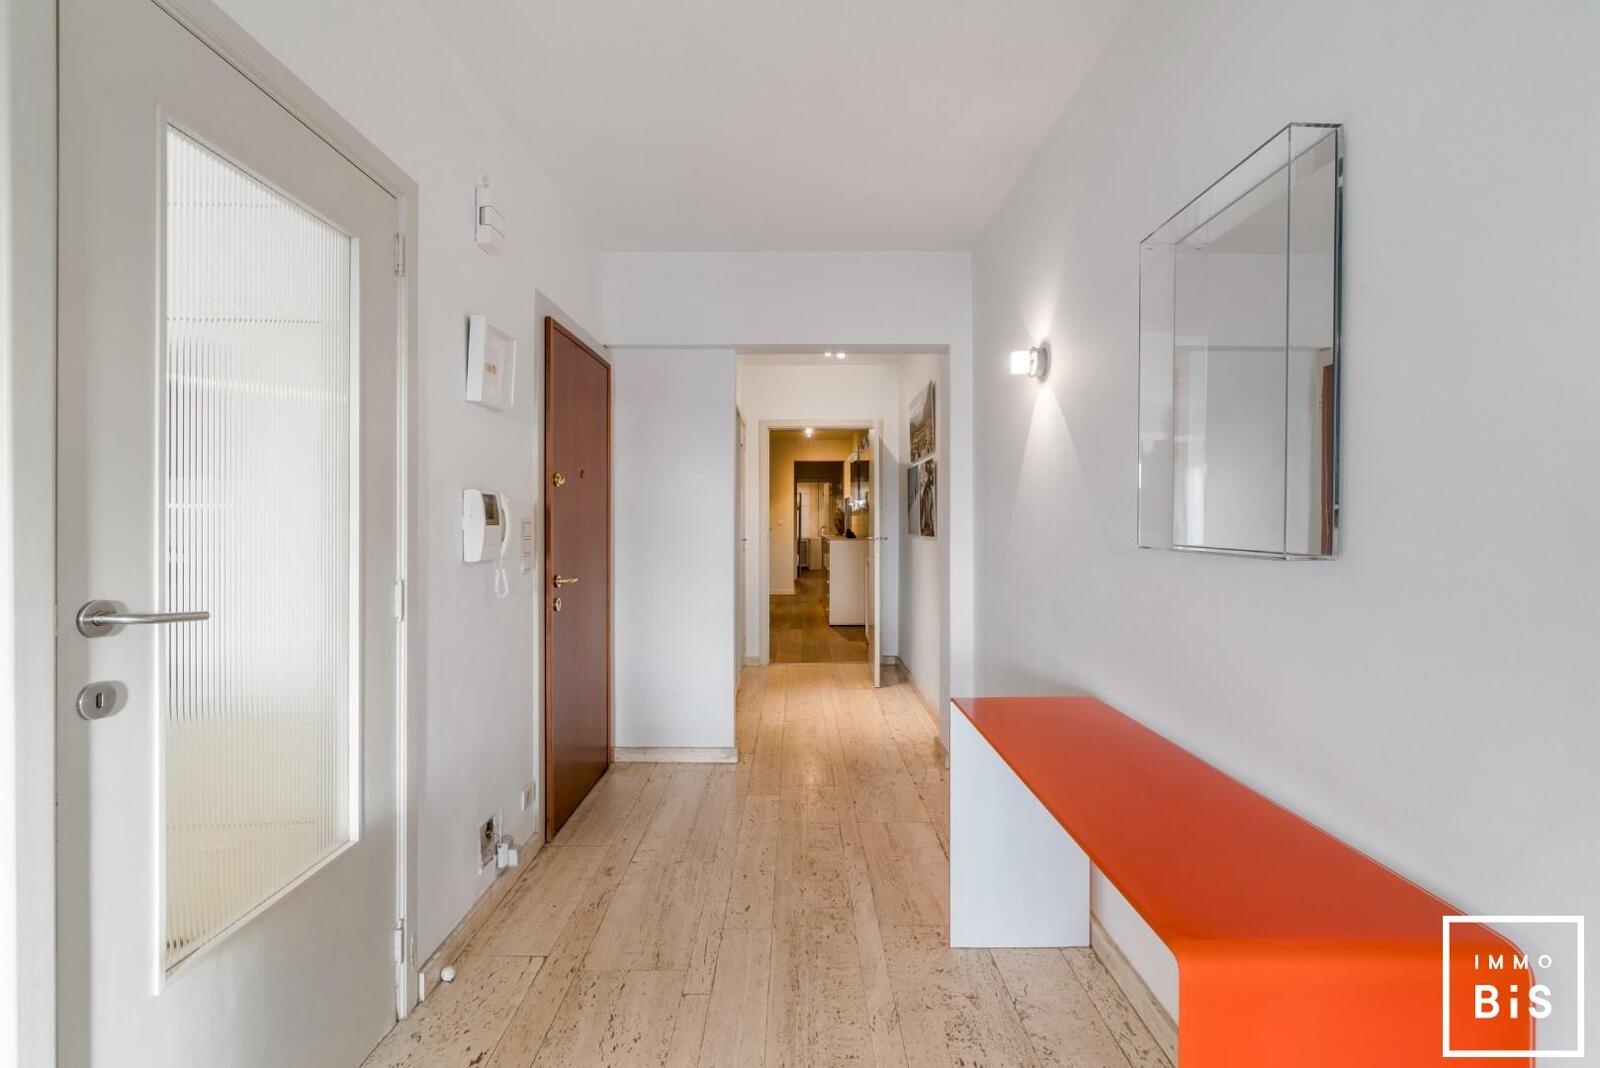 Uitstekend gelegen appartement met 3 slaapkamers in hartje Zoute op de Kustlaan aan de minigolf!  6